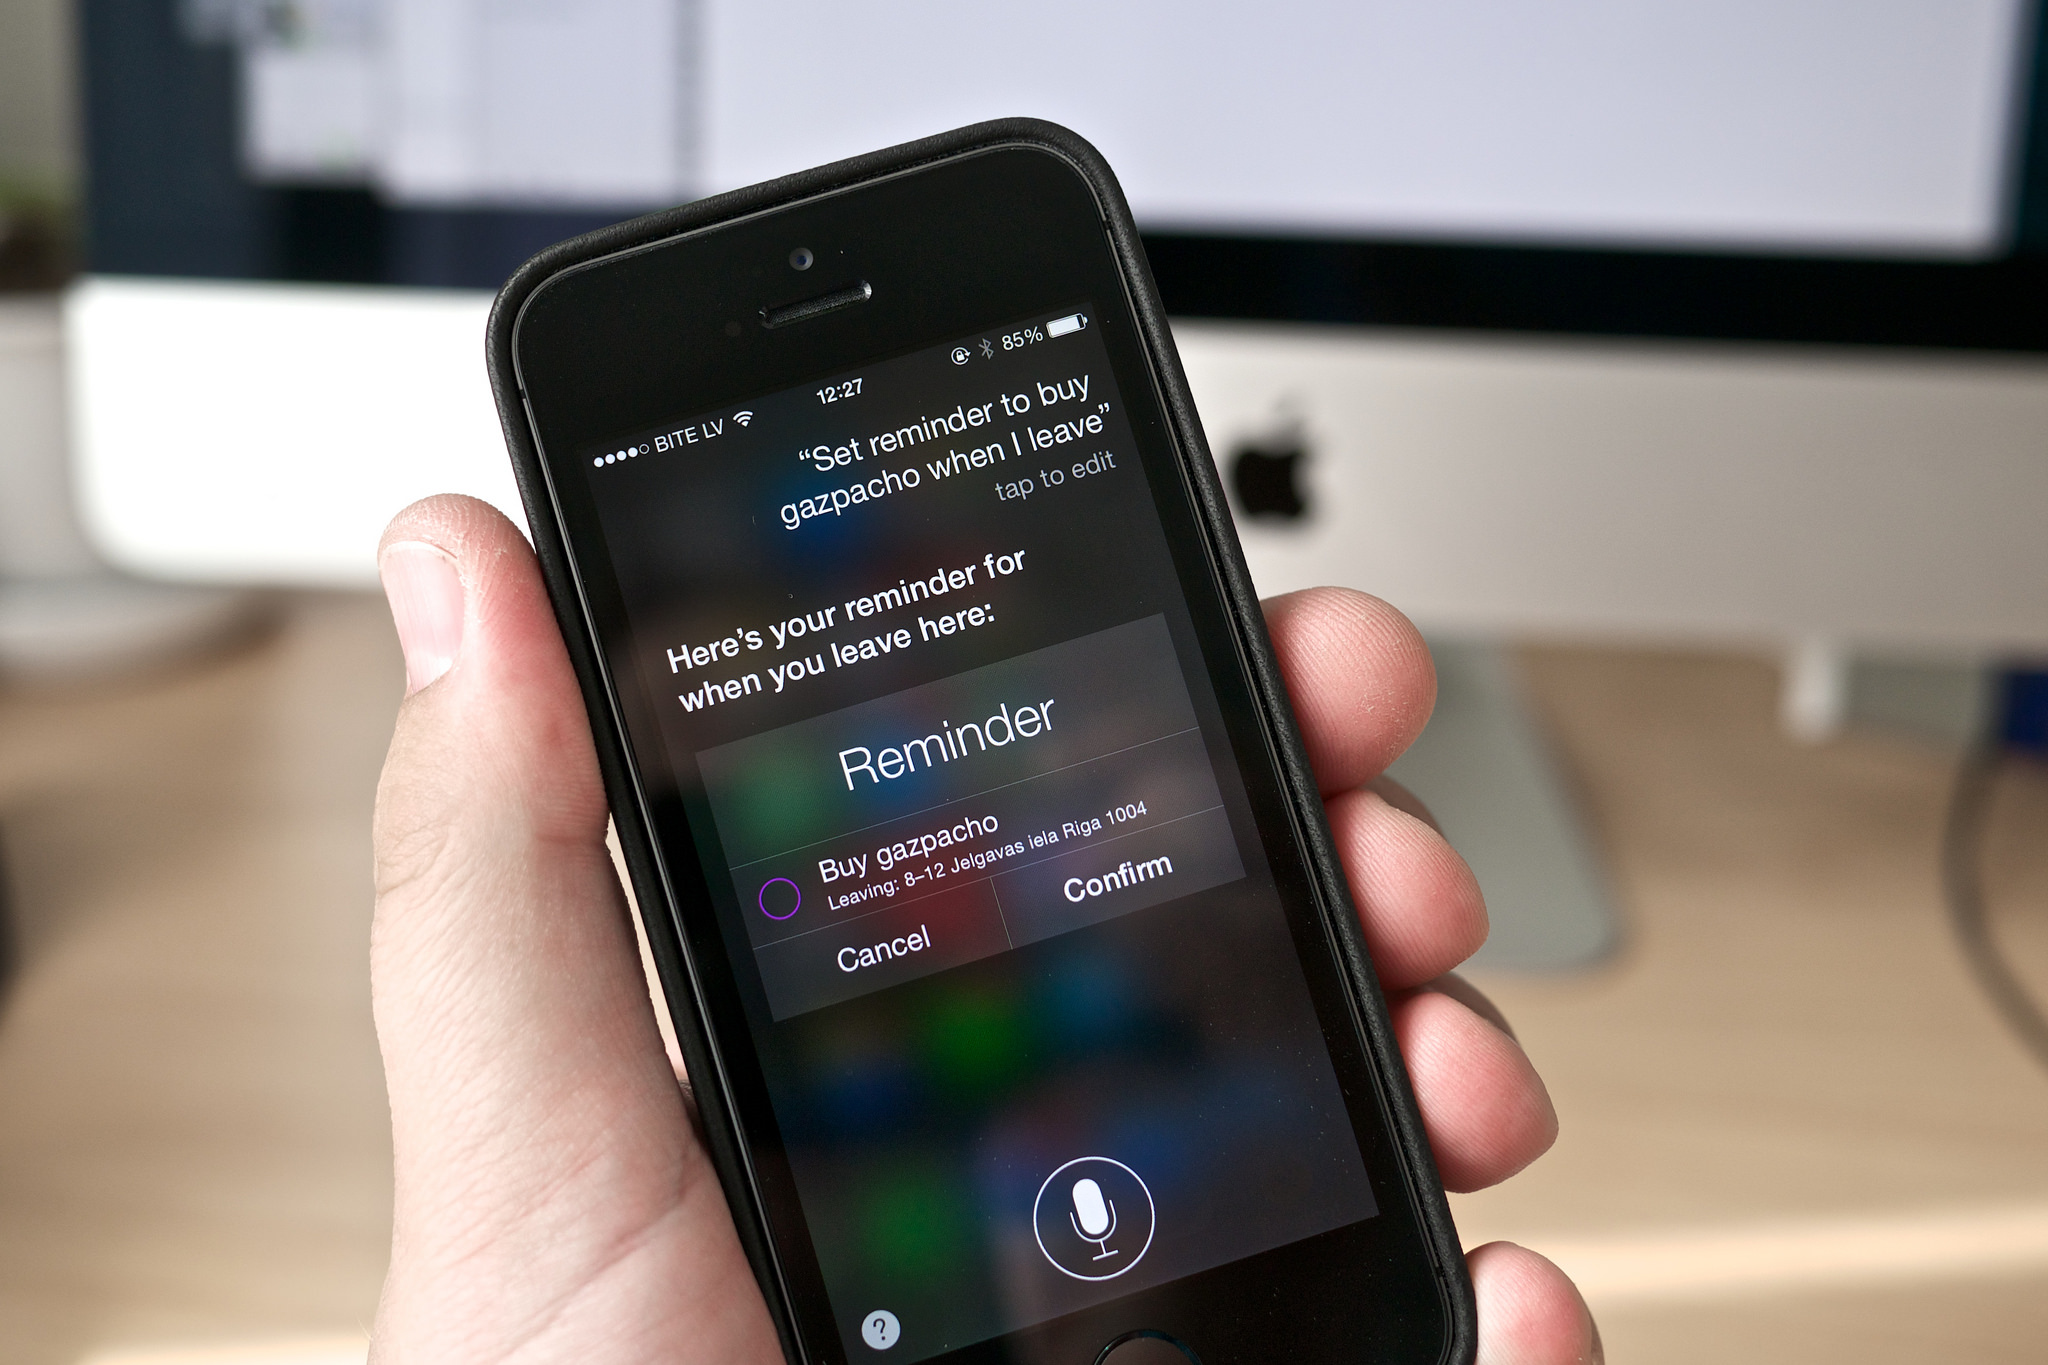 Apple diz que iPhone não escuta suas conversas